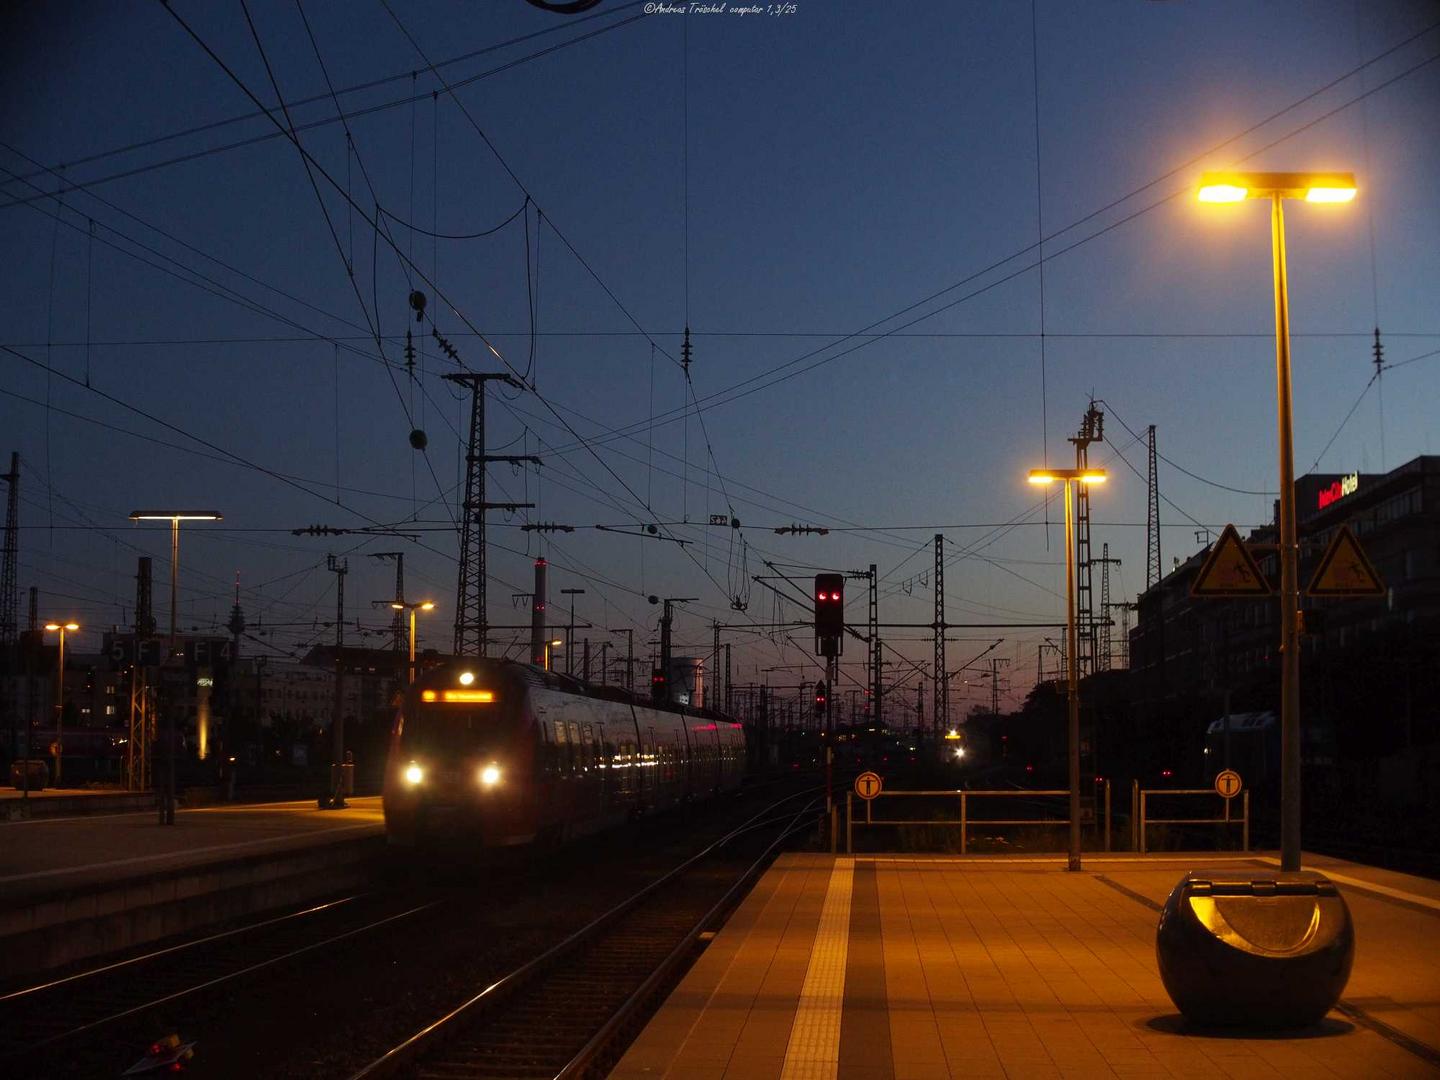 nachts in Nürnberg - am Bahnhof